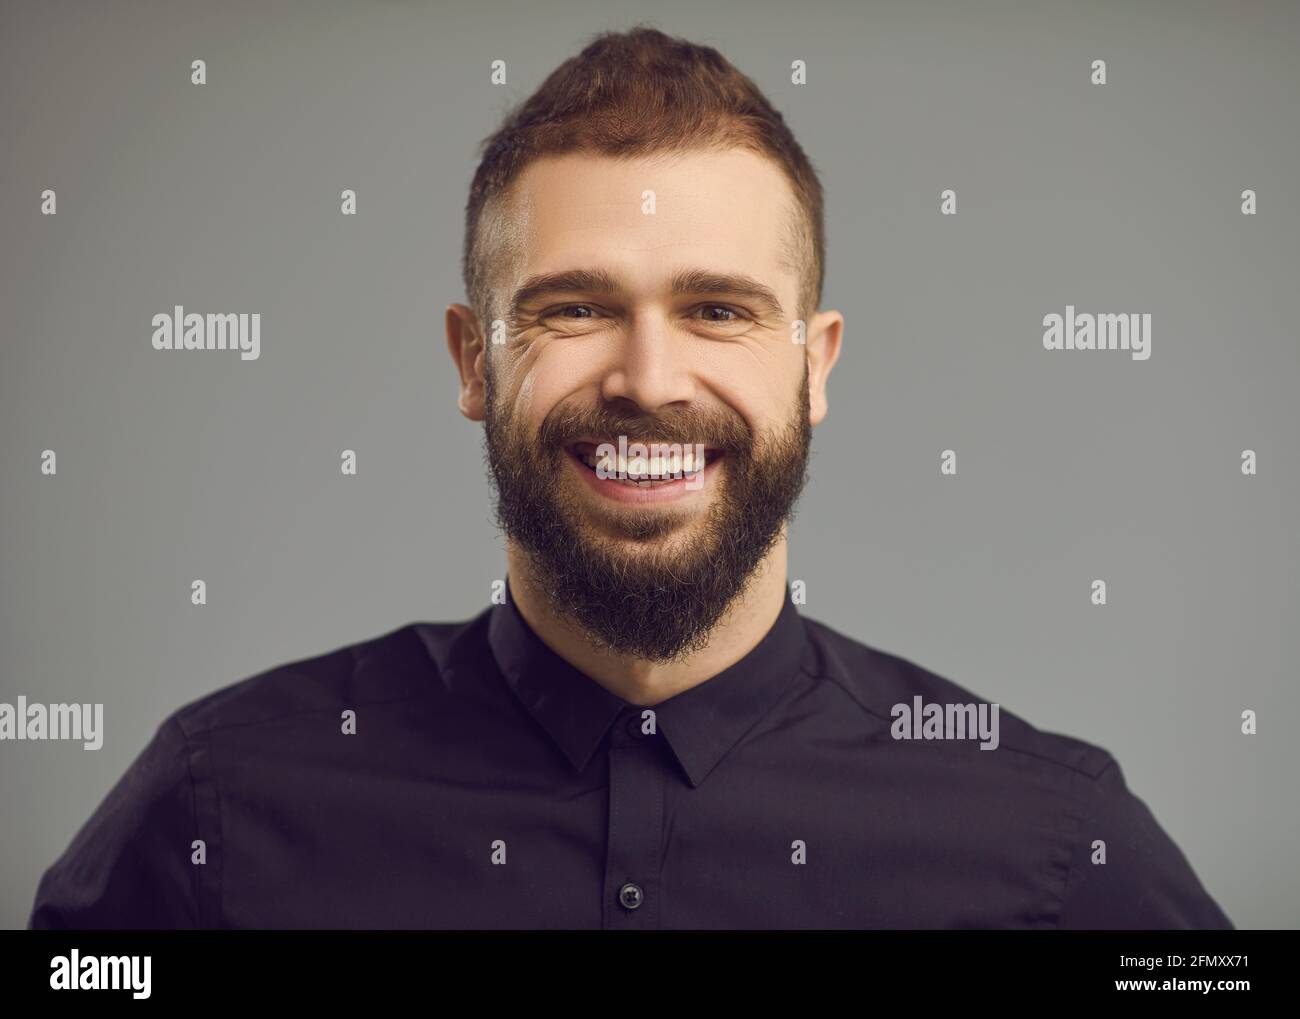 Portrait en studio d'un jeune homme à barbe avec un sourire heureux sur son visage amical Banque D'Images